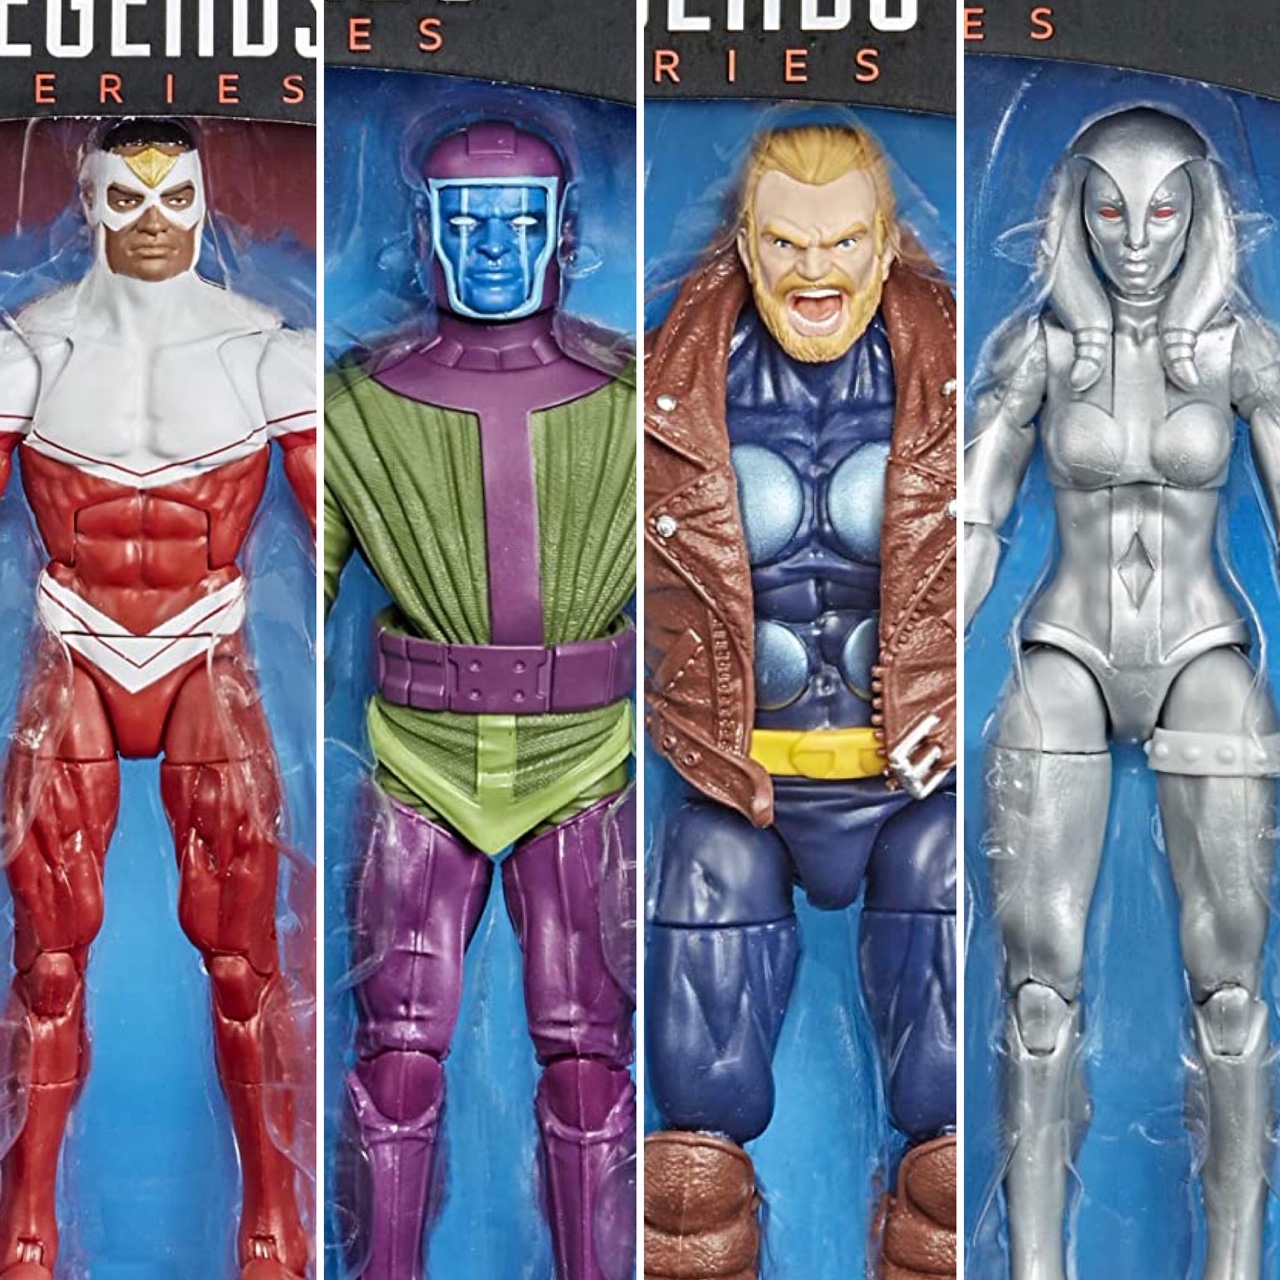 Avengers: Endgame Marvel Legends Wave 2 Set of 7 Figures (Hulk BAF)